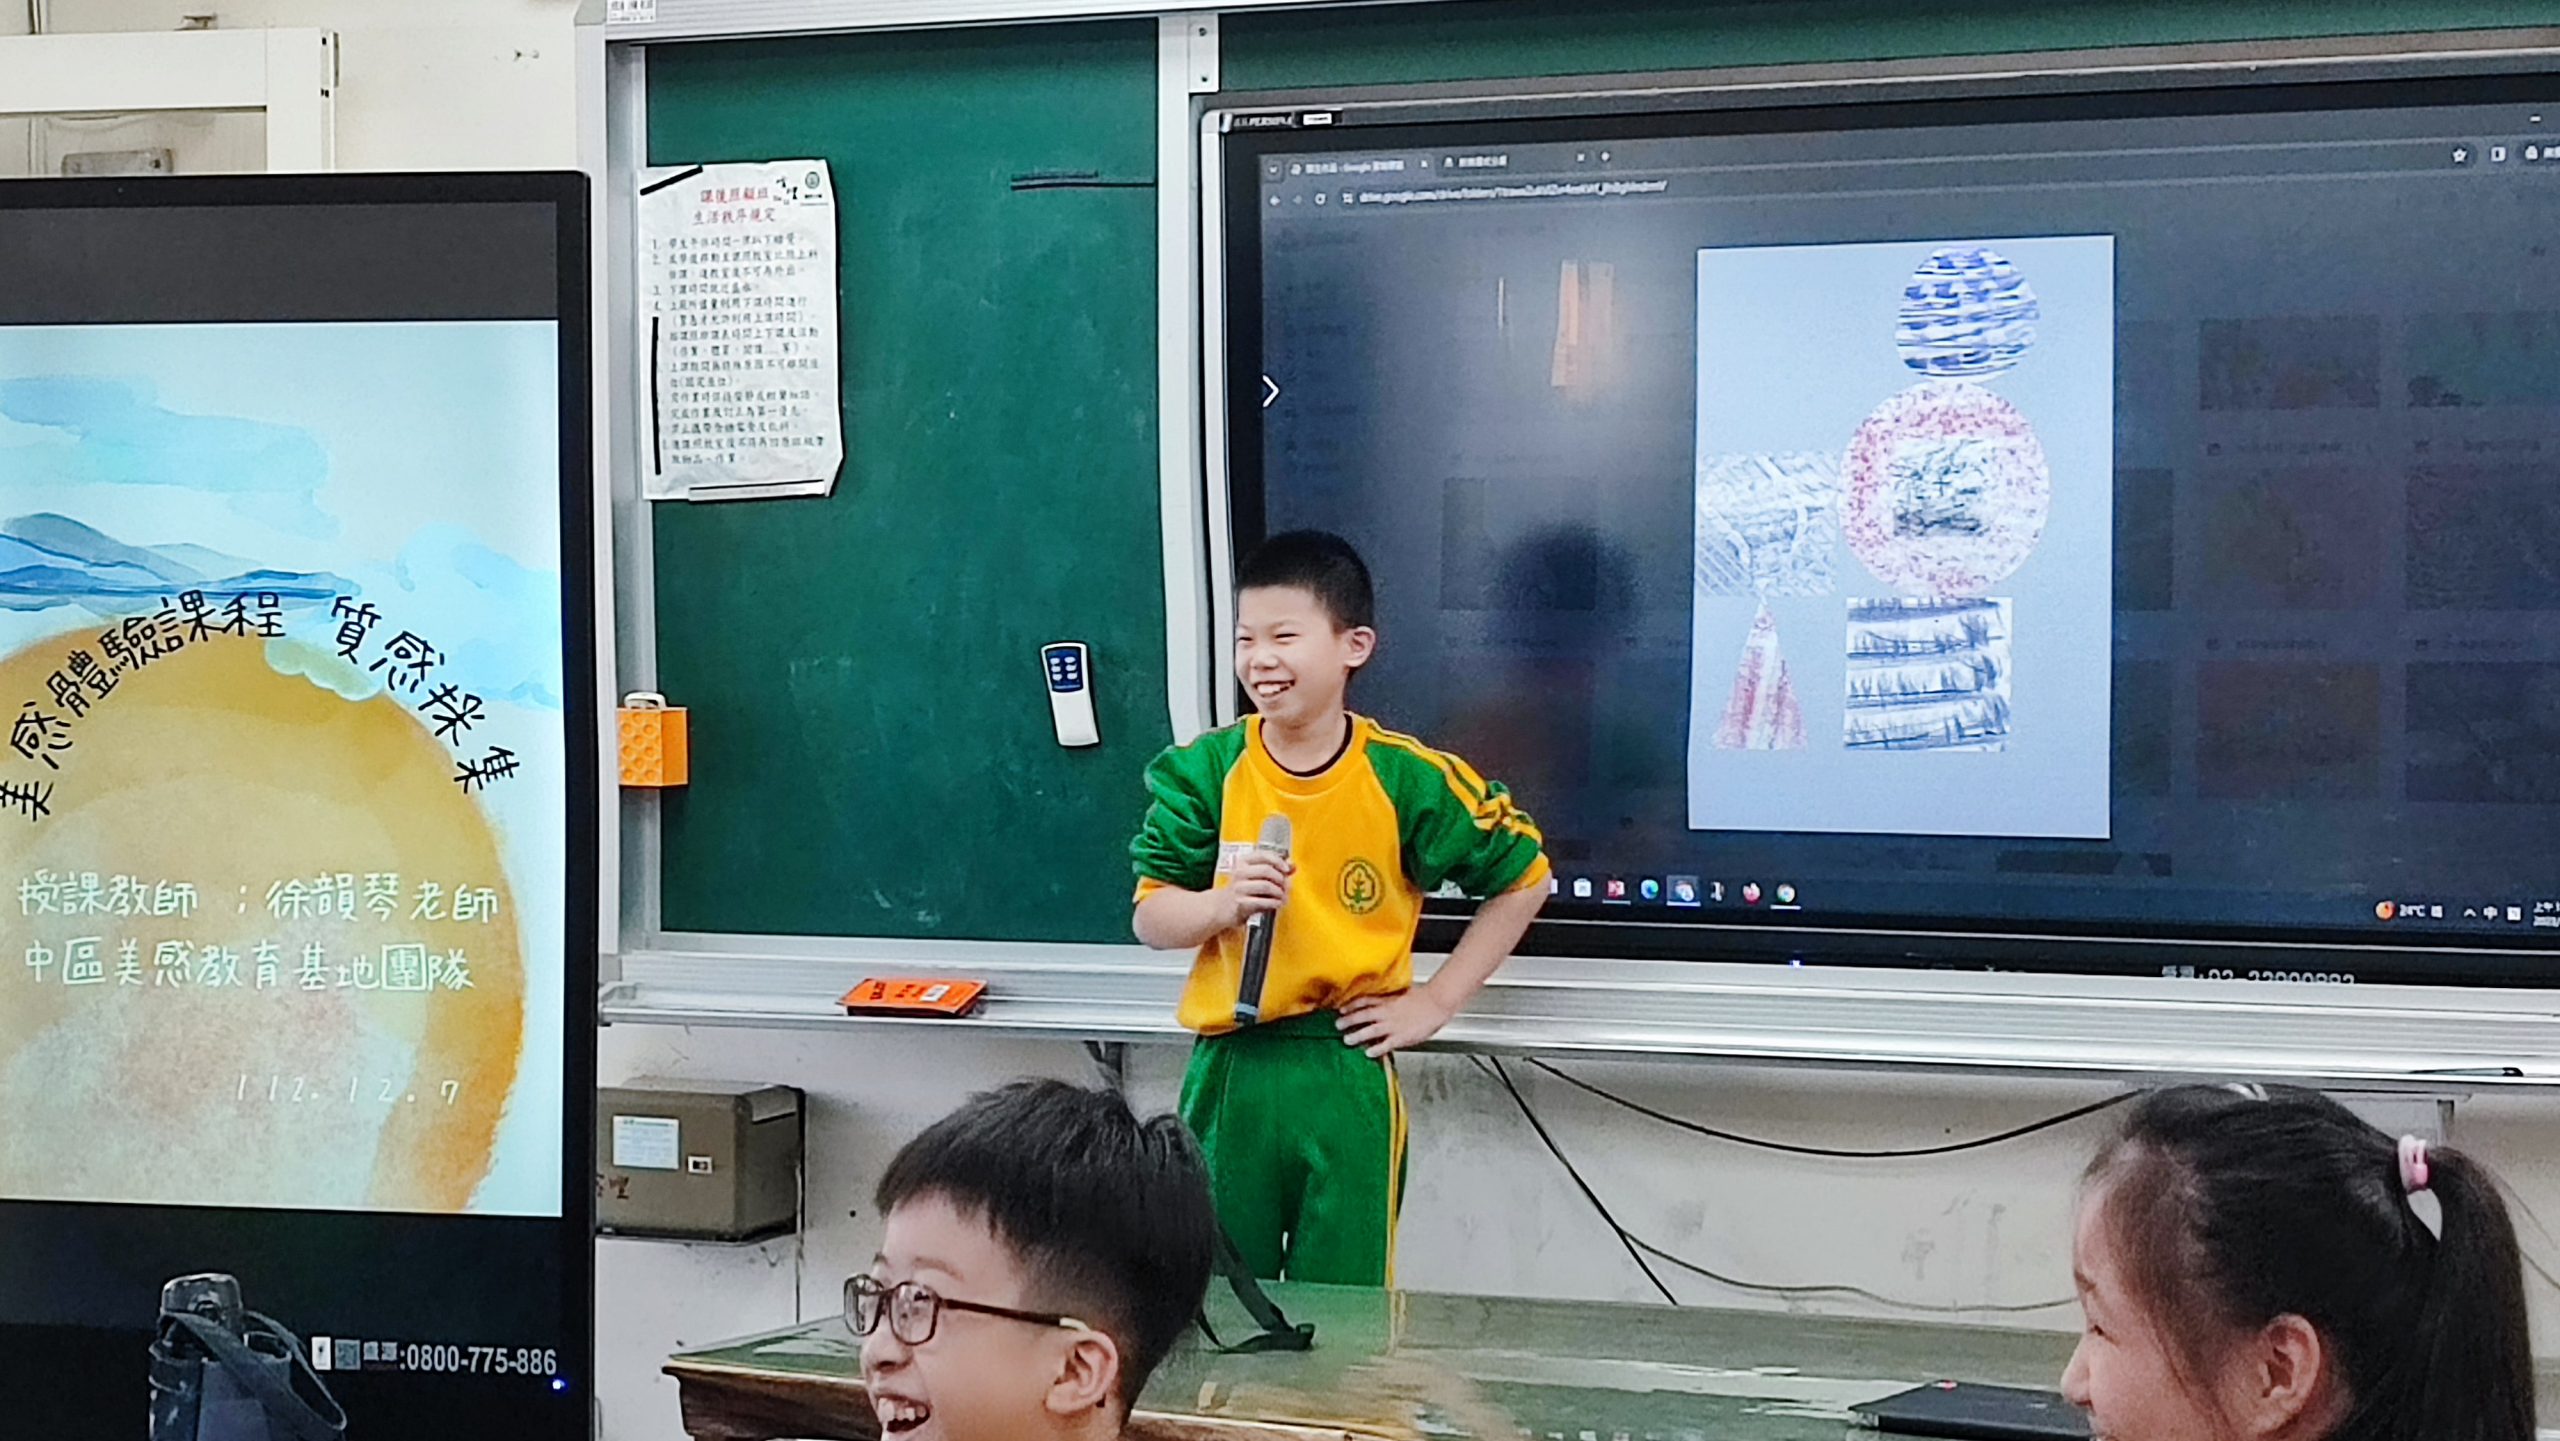 112學年度第一學期於臺中市烏日區喀哩國民小學施辦質感採集課程實作紀錄系列照片共20張